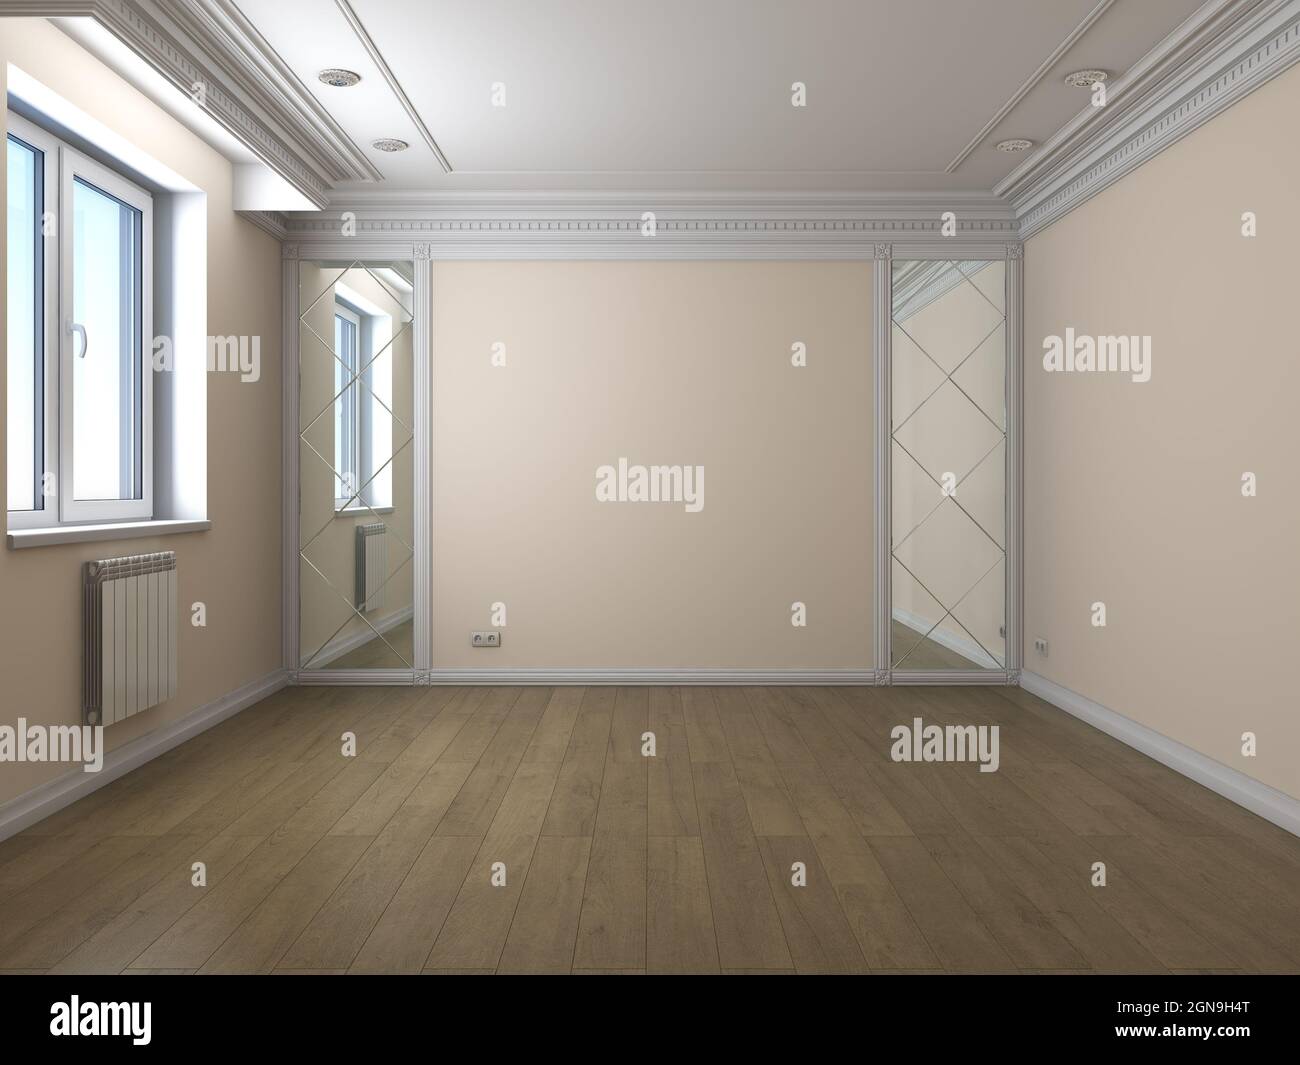 Intérieur vide avec fenêtre en plastique, murs beige, parquet, moulures blanches et deux miroirs. illustration 3d 3840 x 2880 Banque D'Images